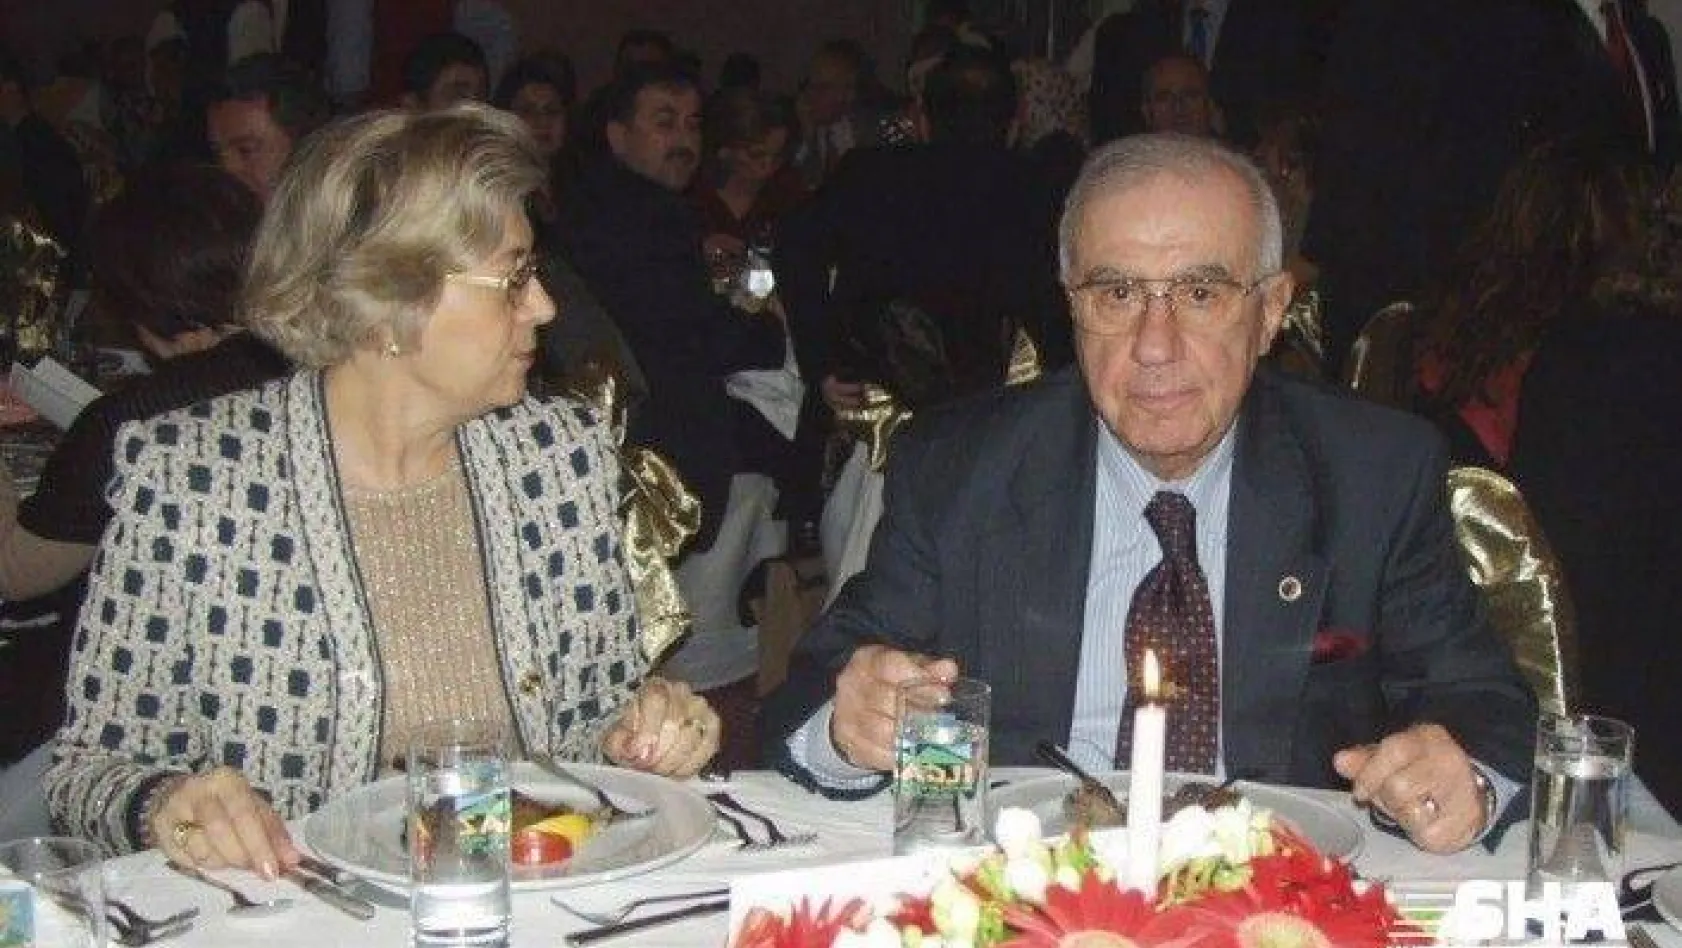 Eski Genelkurmay Başkanı Orgeneral İsmail Hakkı Karadayı hayatını kaybetti